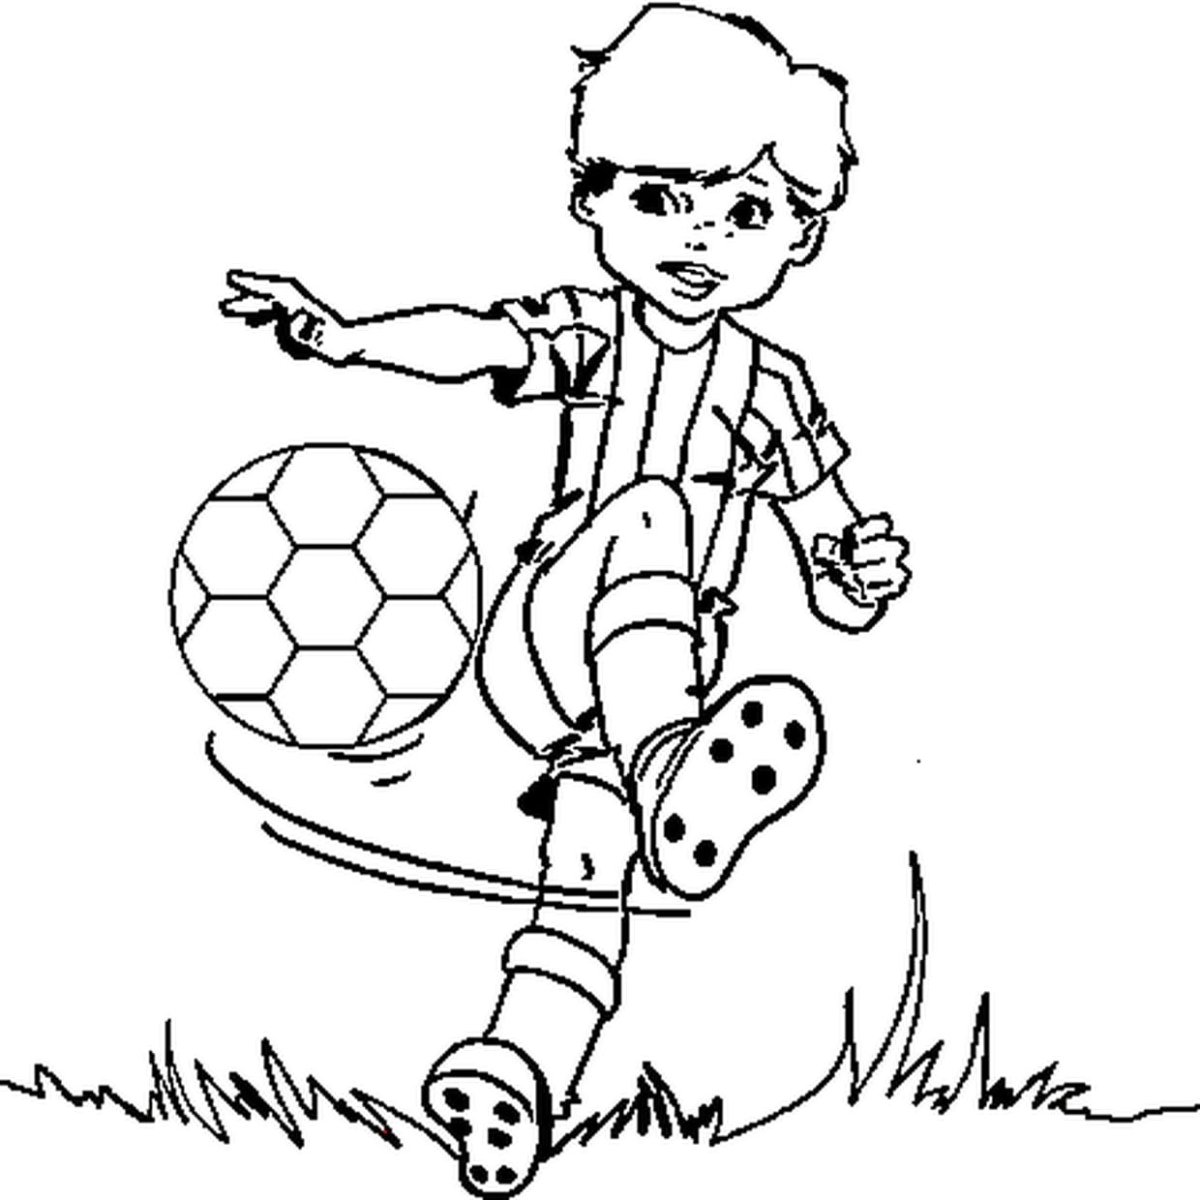 Рисунок человека играющего в футбол